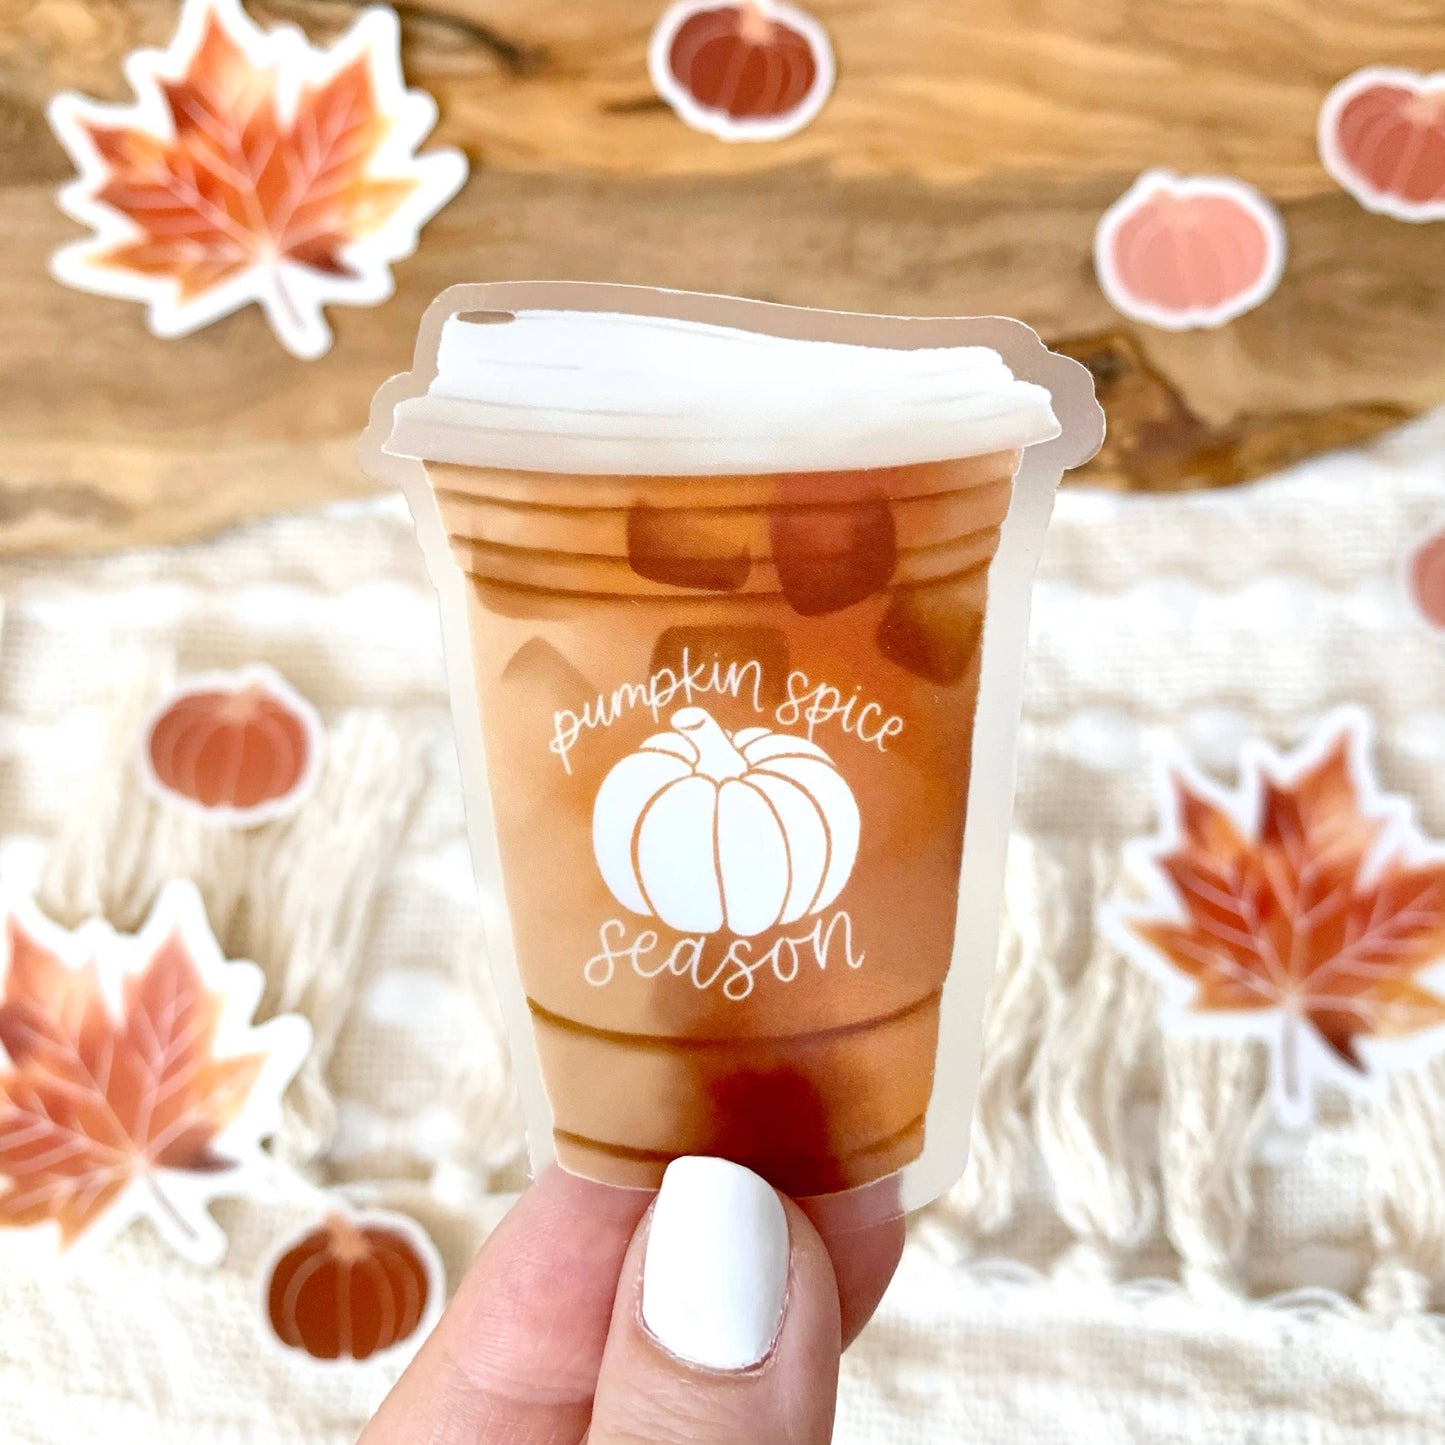 Pumpkin Spice Latte Sticker